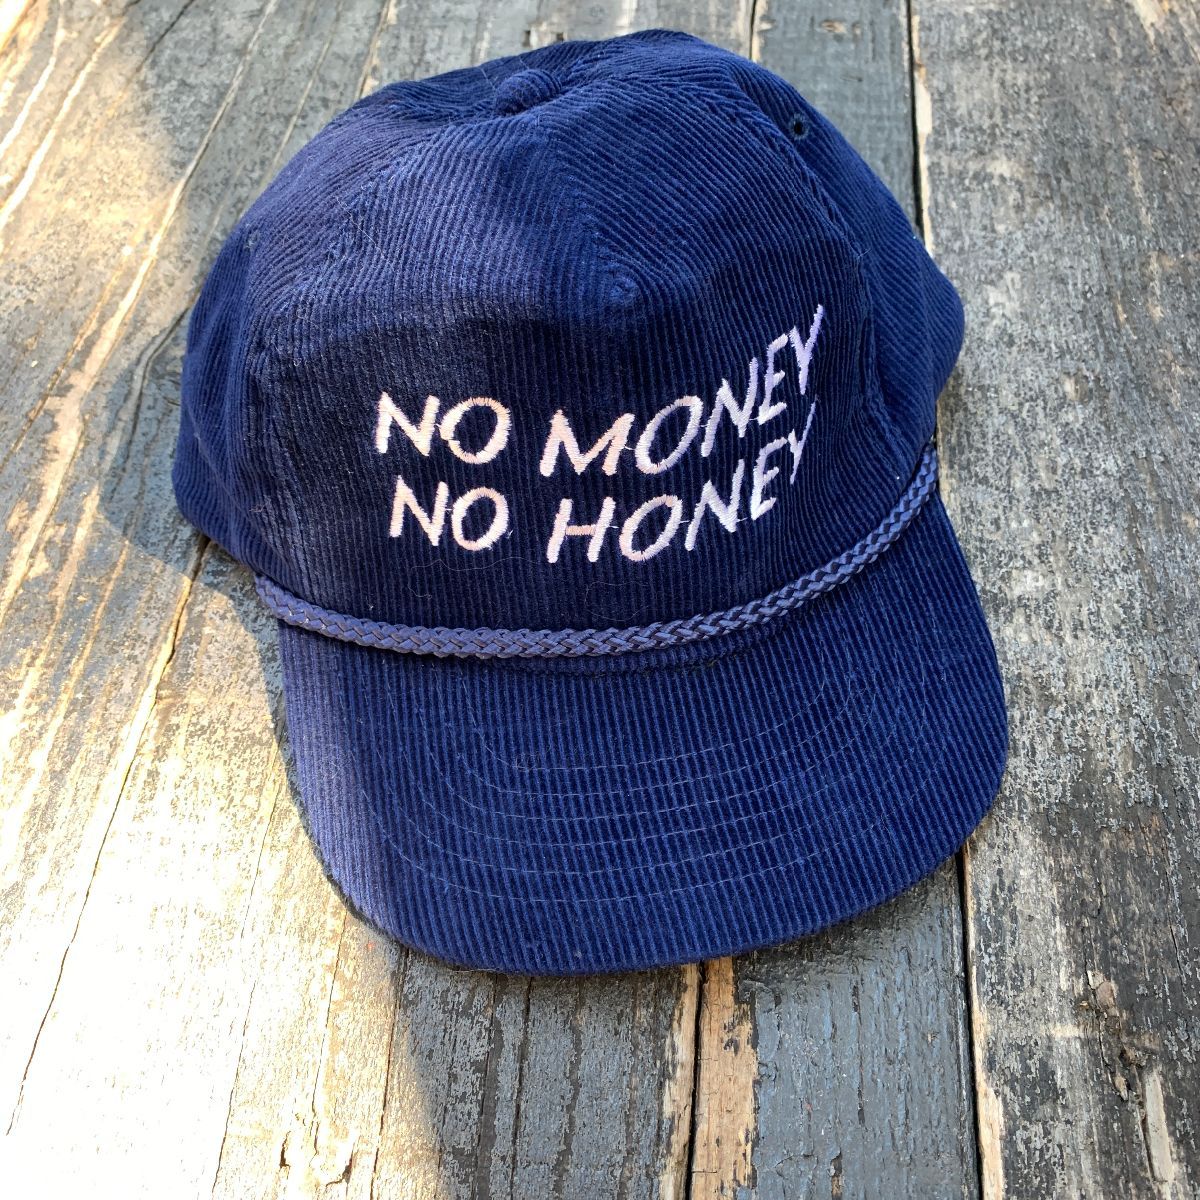 Honey no no money 